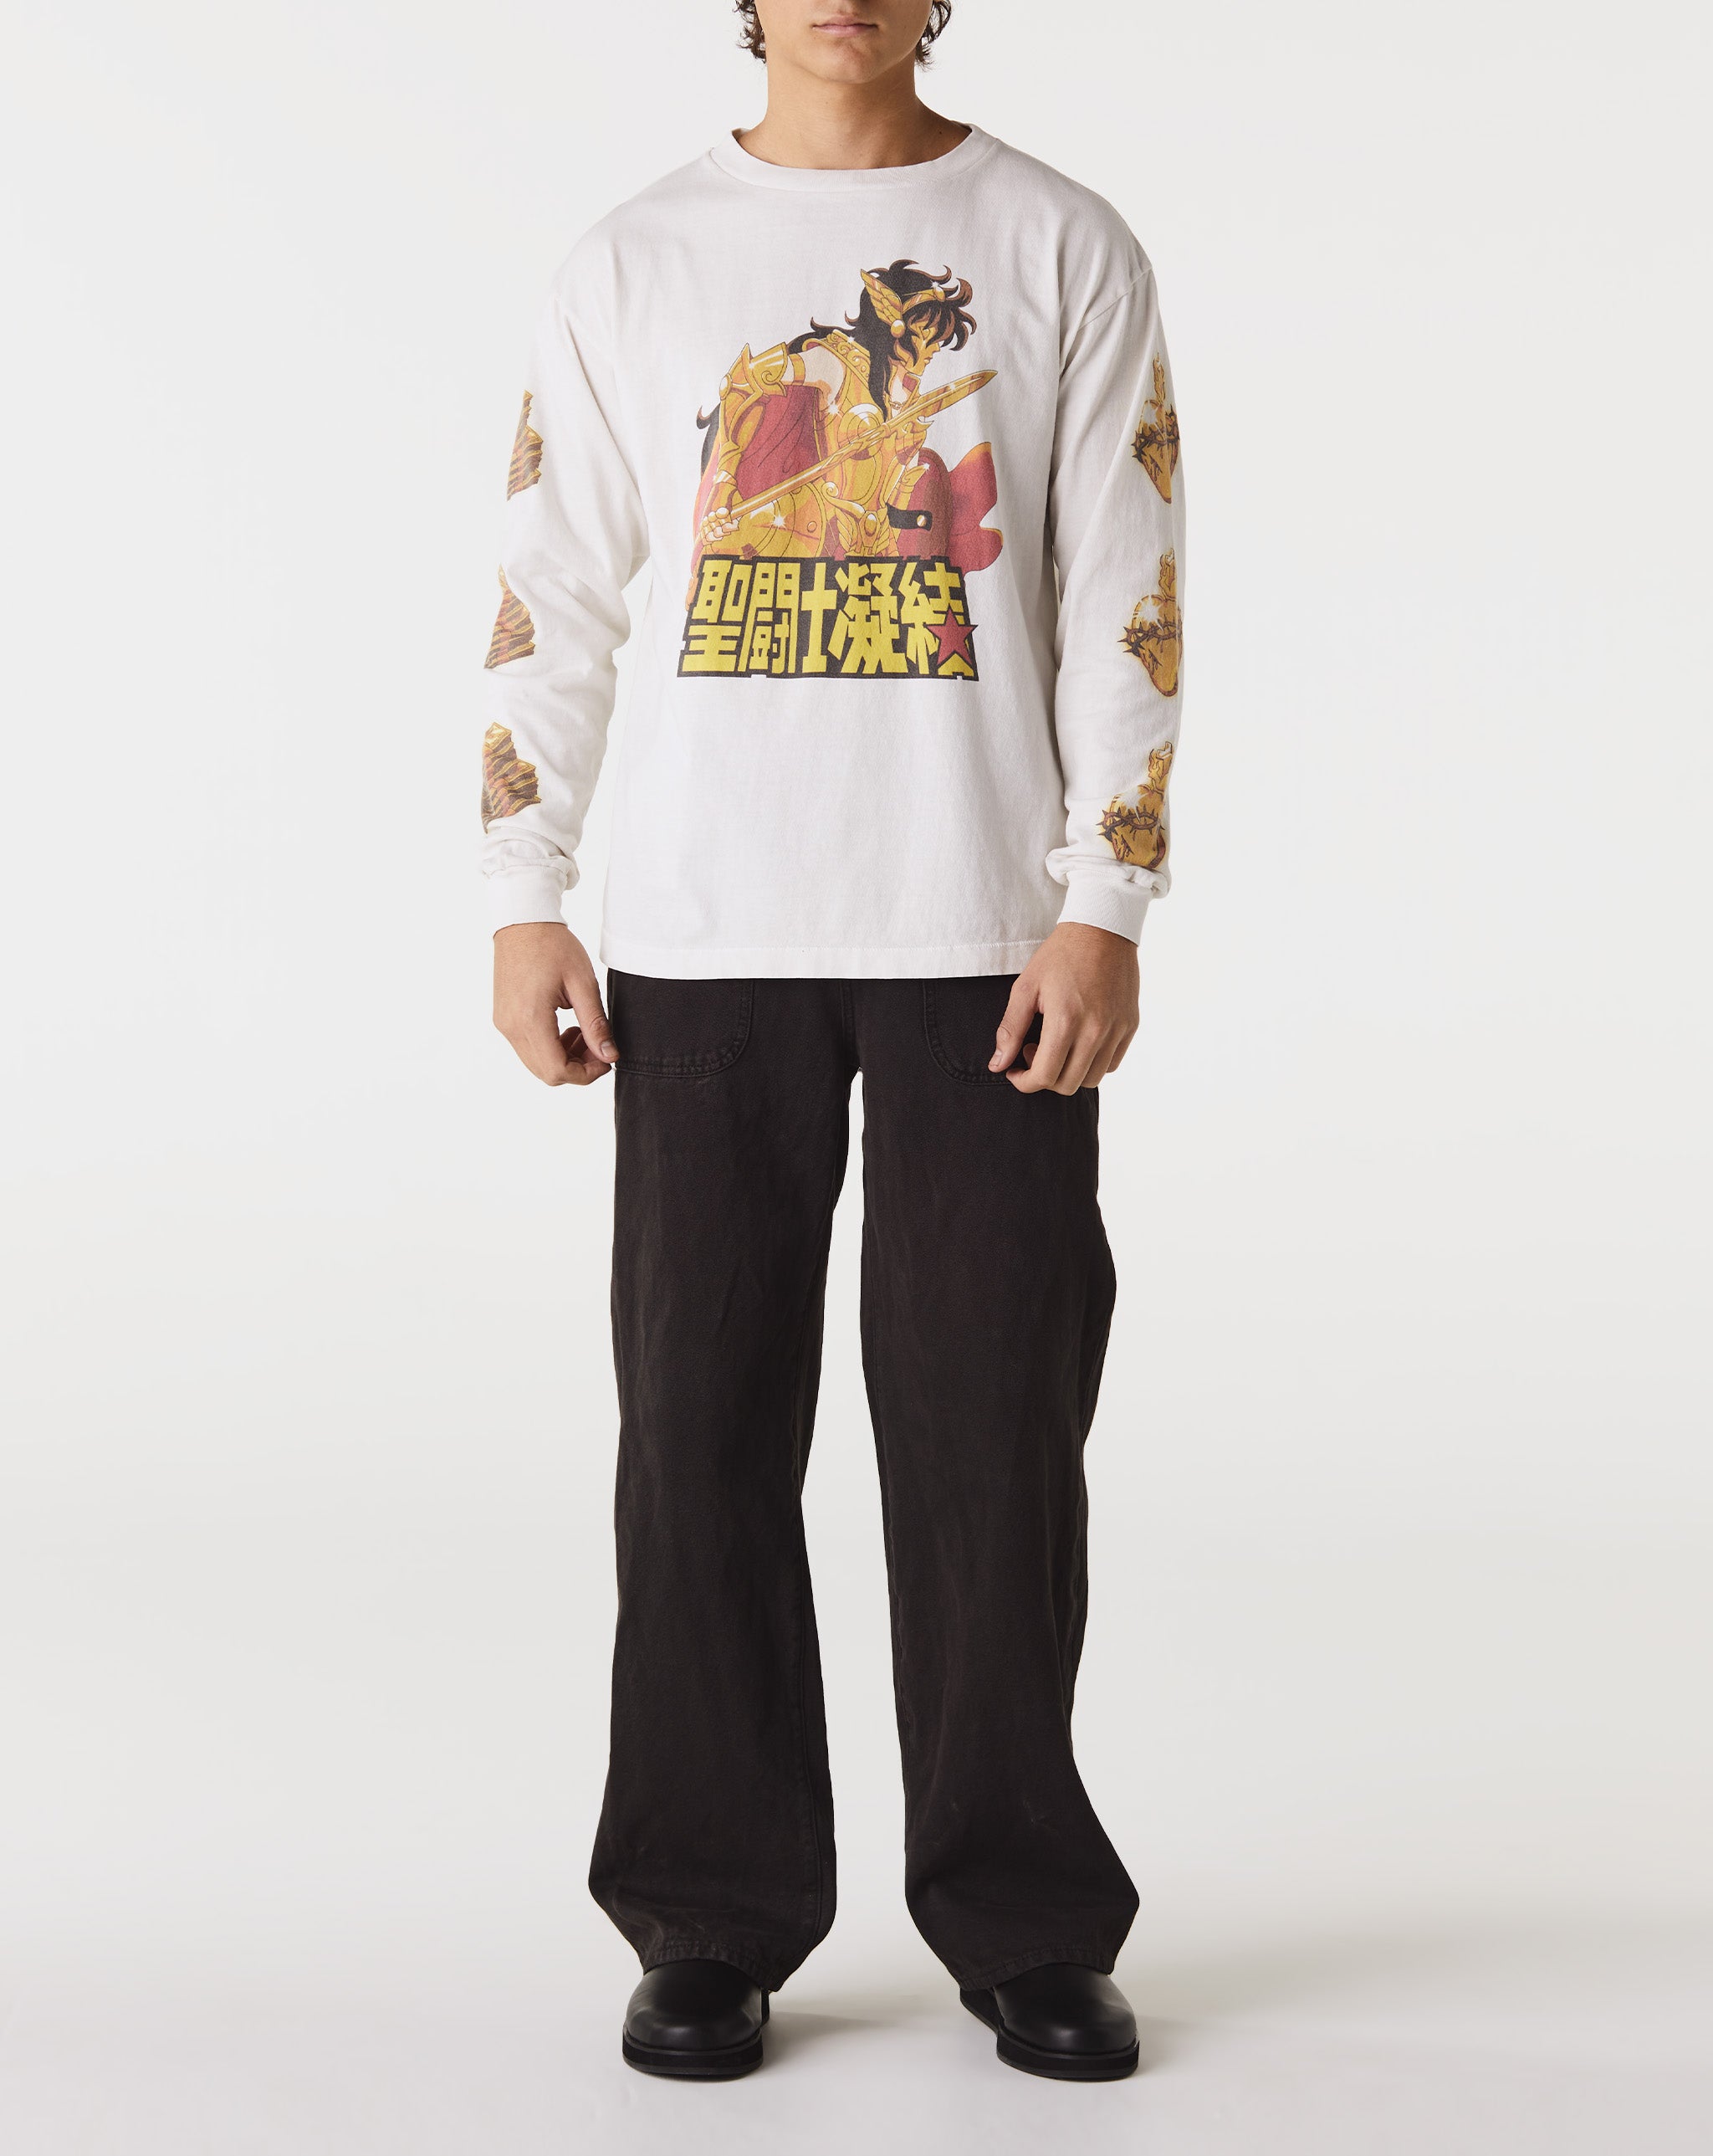 Saint Michael 聖闘士 Long Sleeve T-Shirt  - Cheap Erlebniswelt-fliegenfischen Jordan outlet